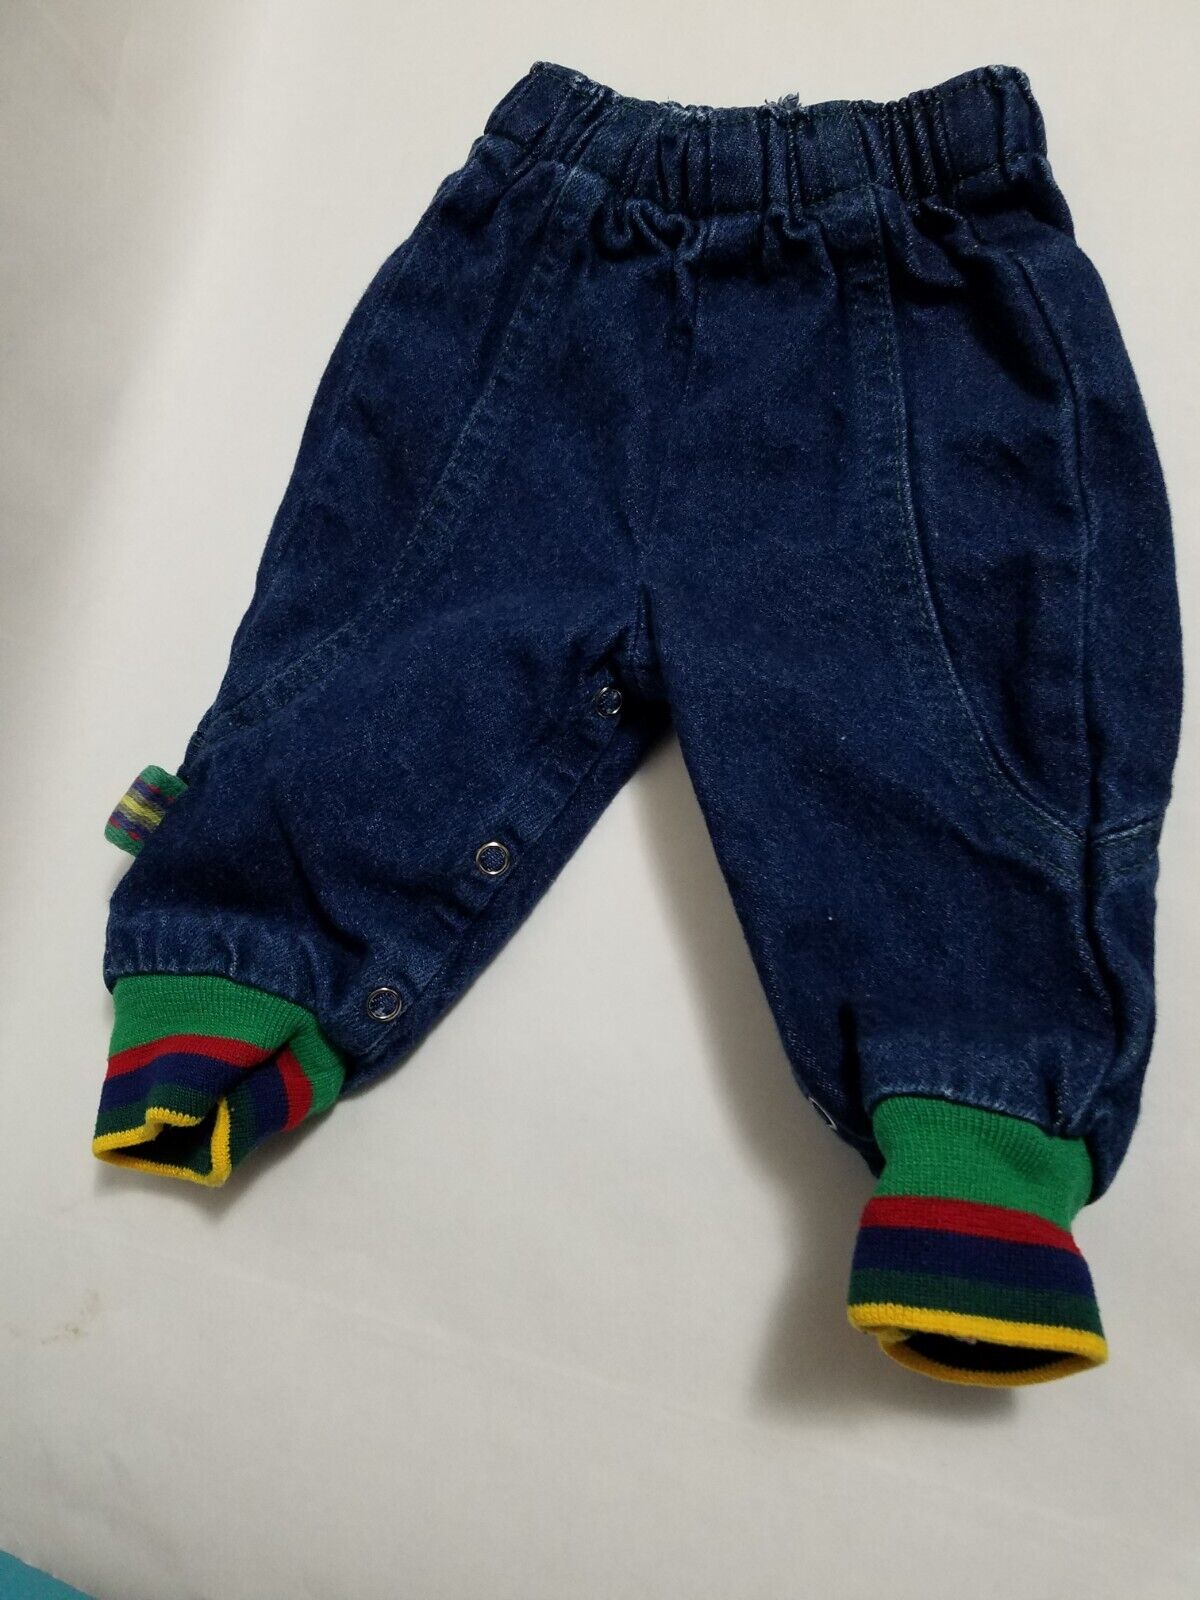 Vintage Little Levi’s Jeans Denim Infants 9 Months Cuffed Jogger Style